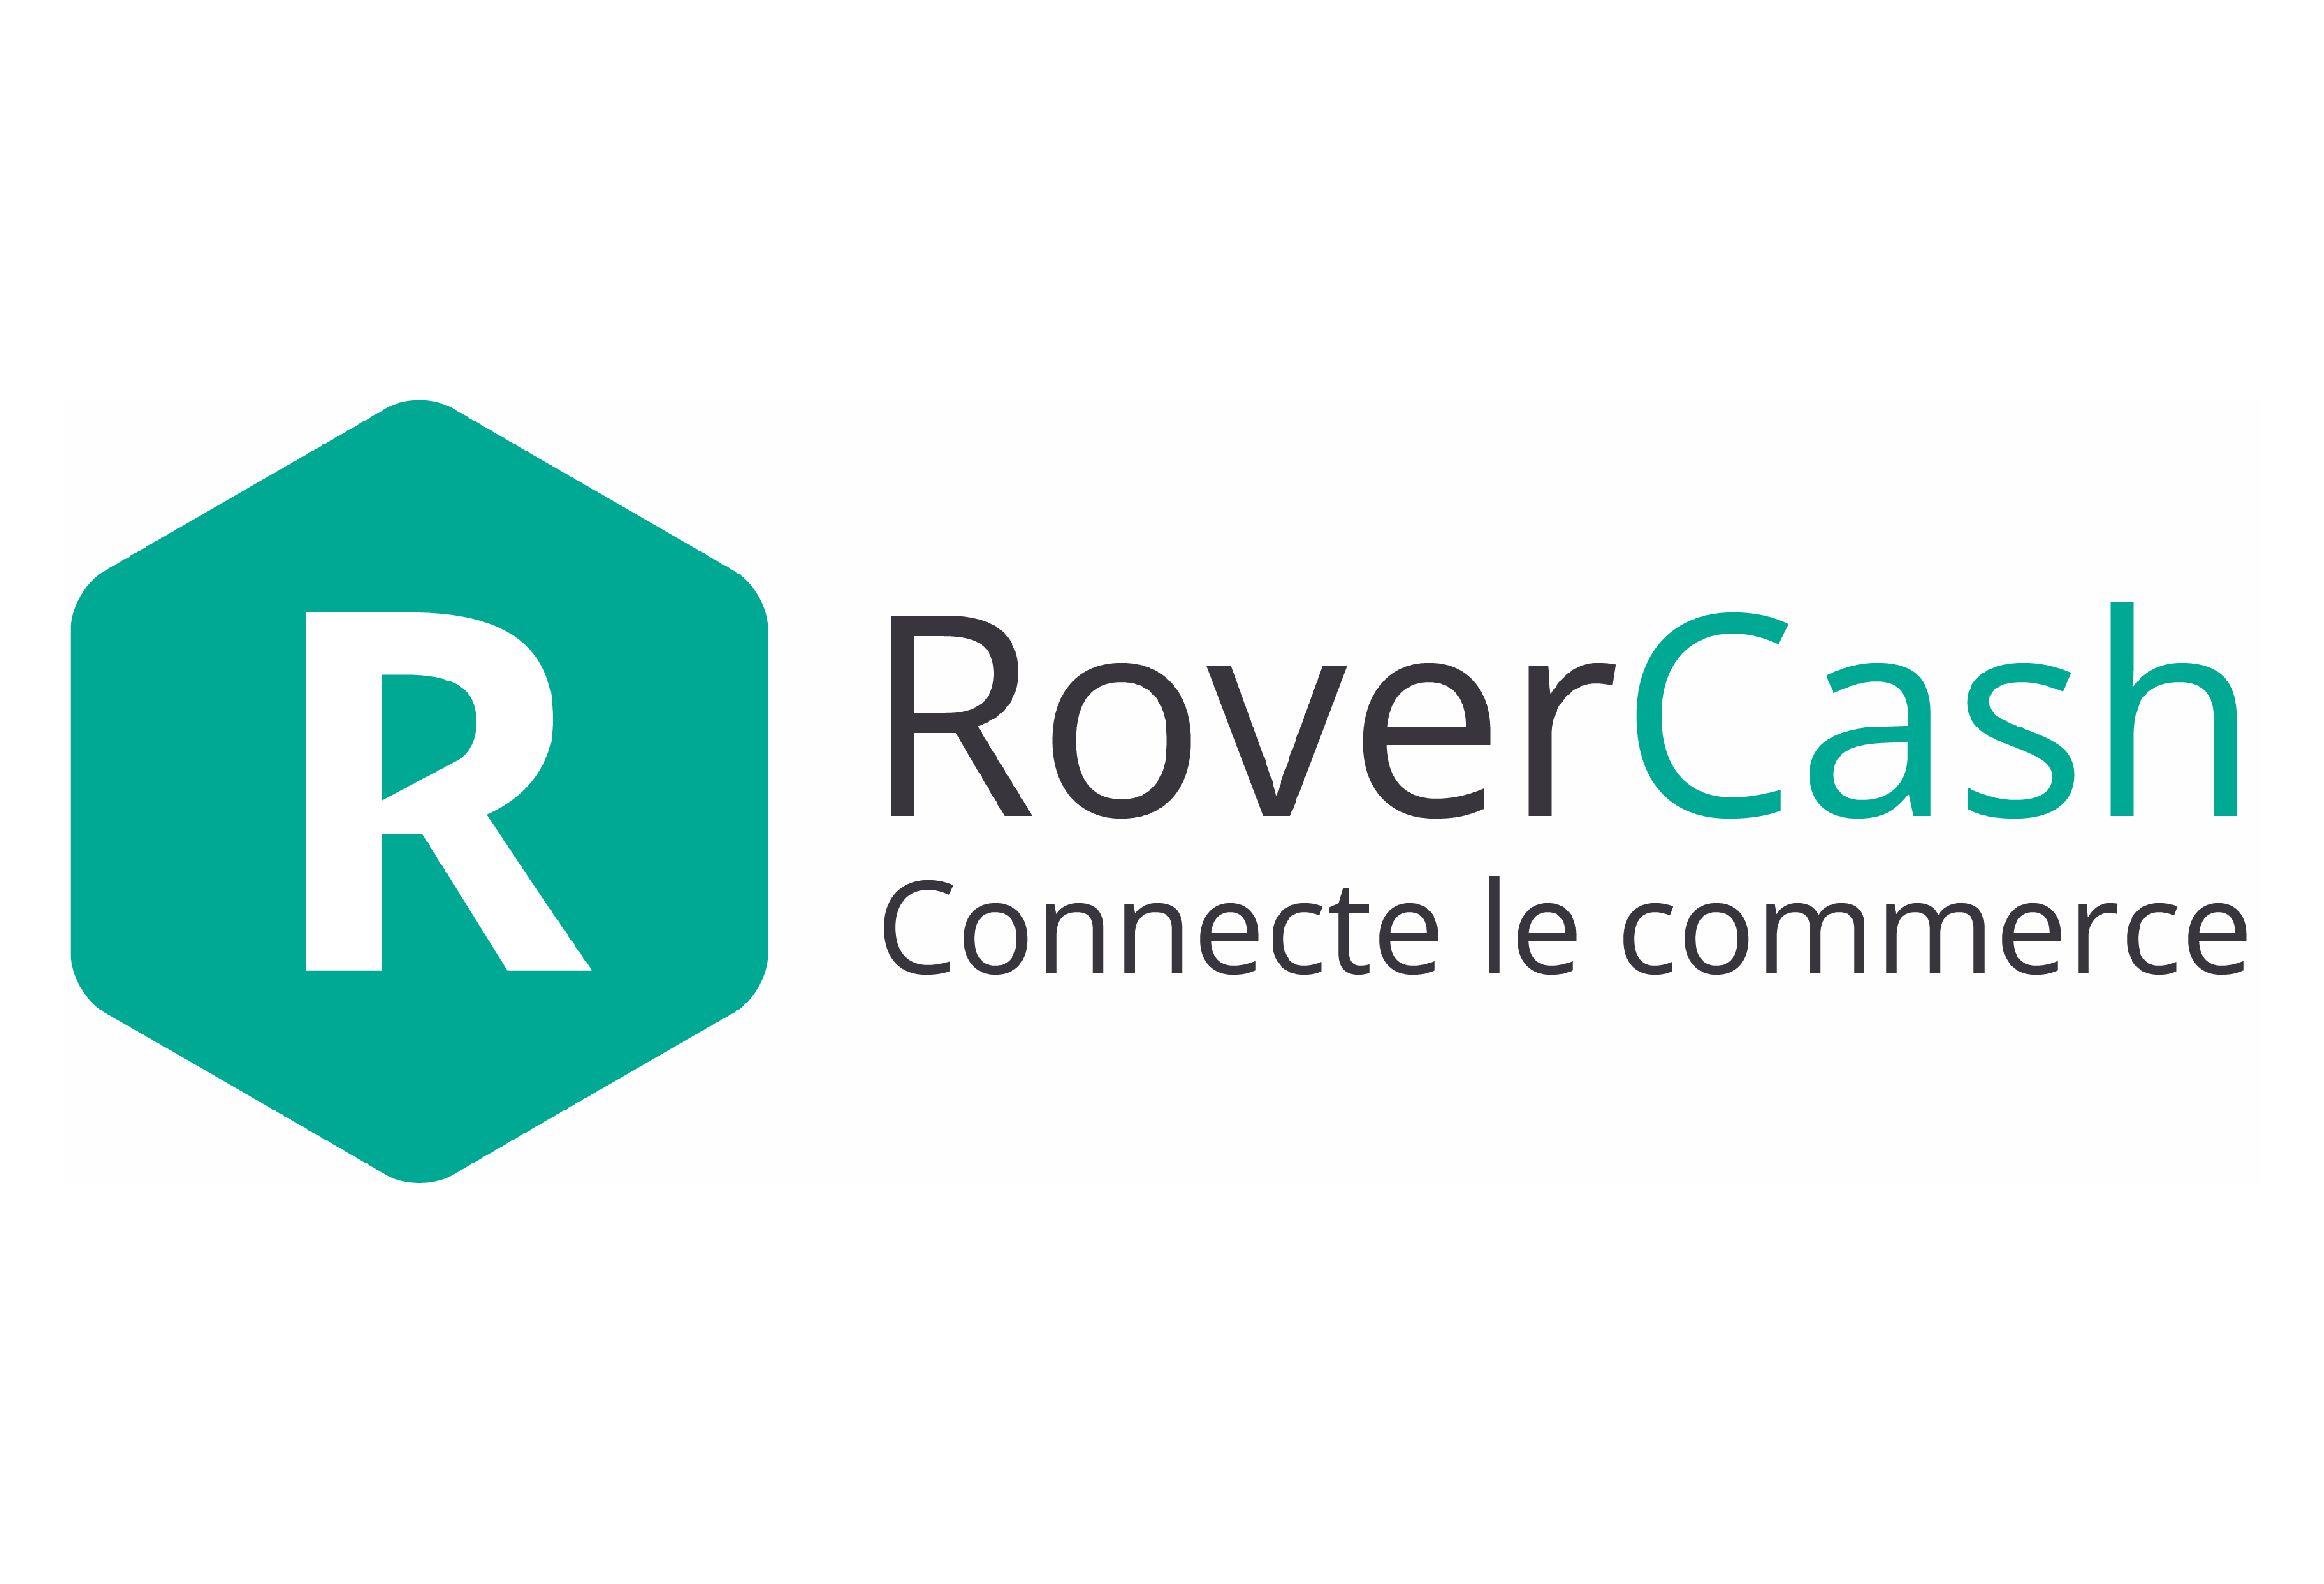 rover cash reunion telecom